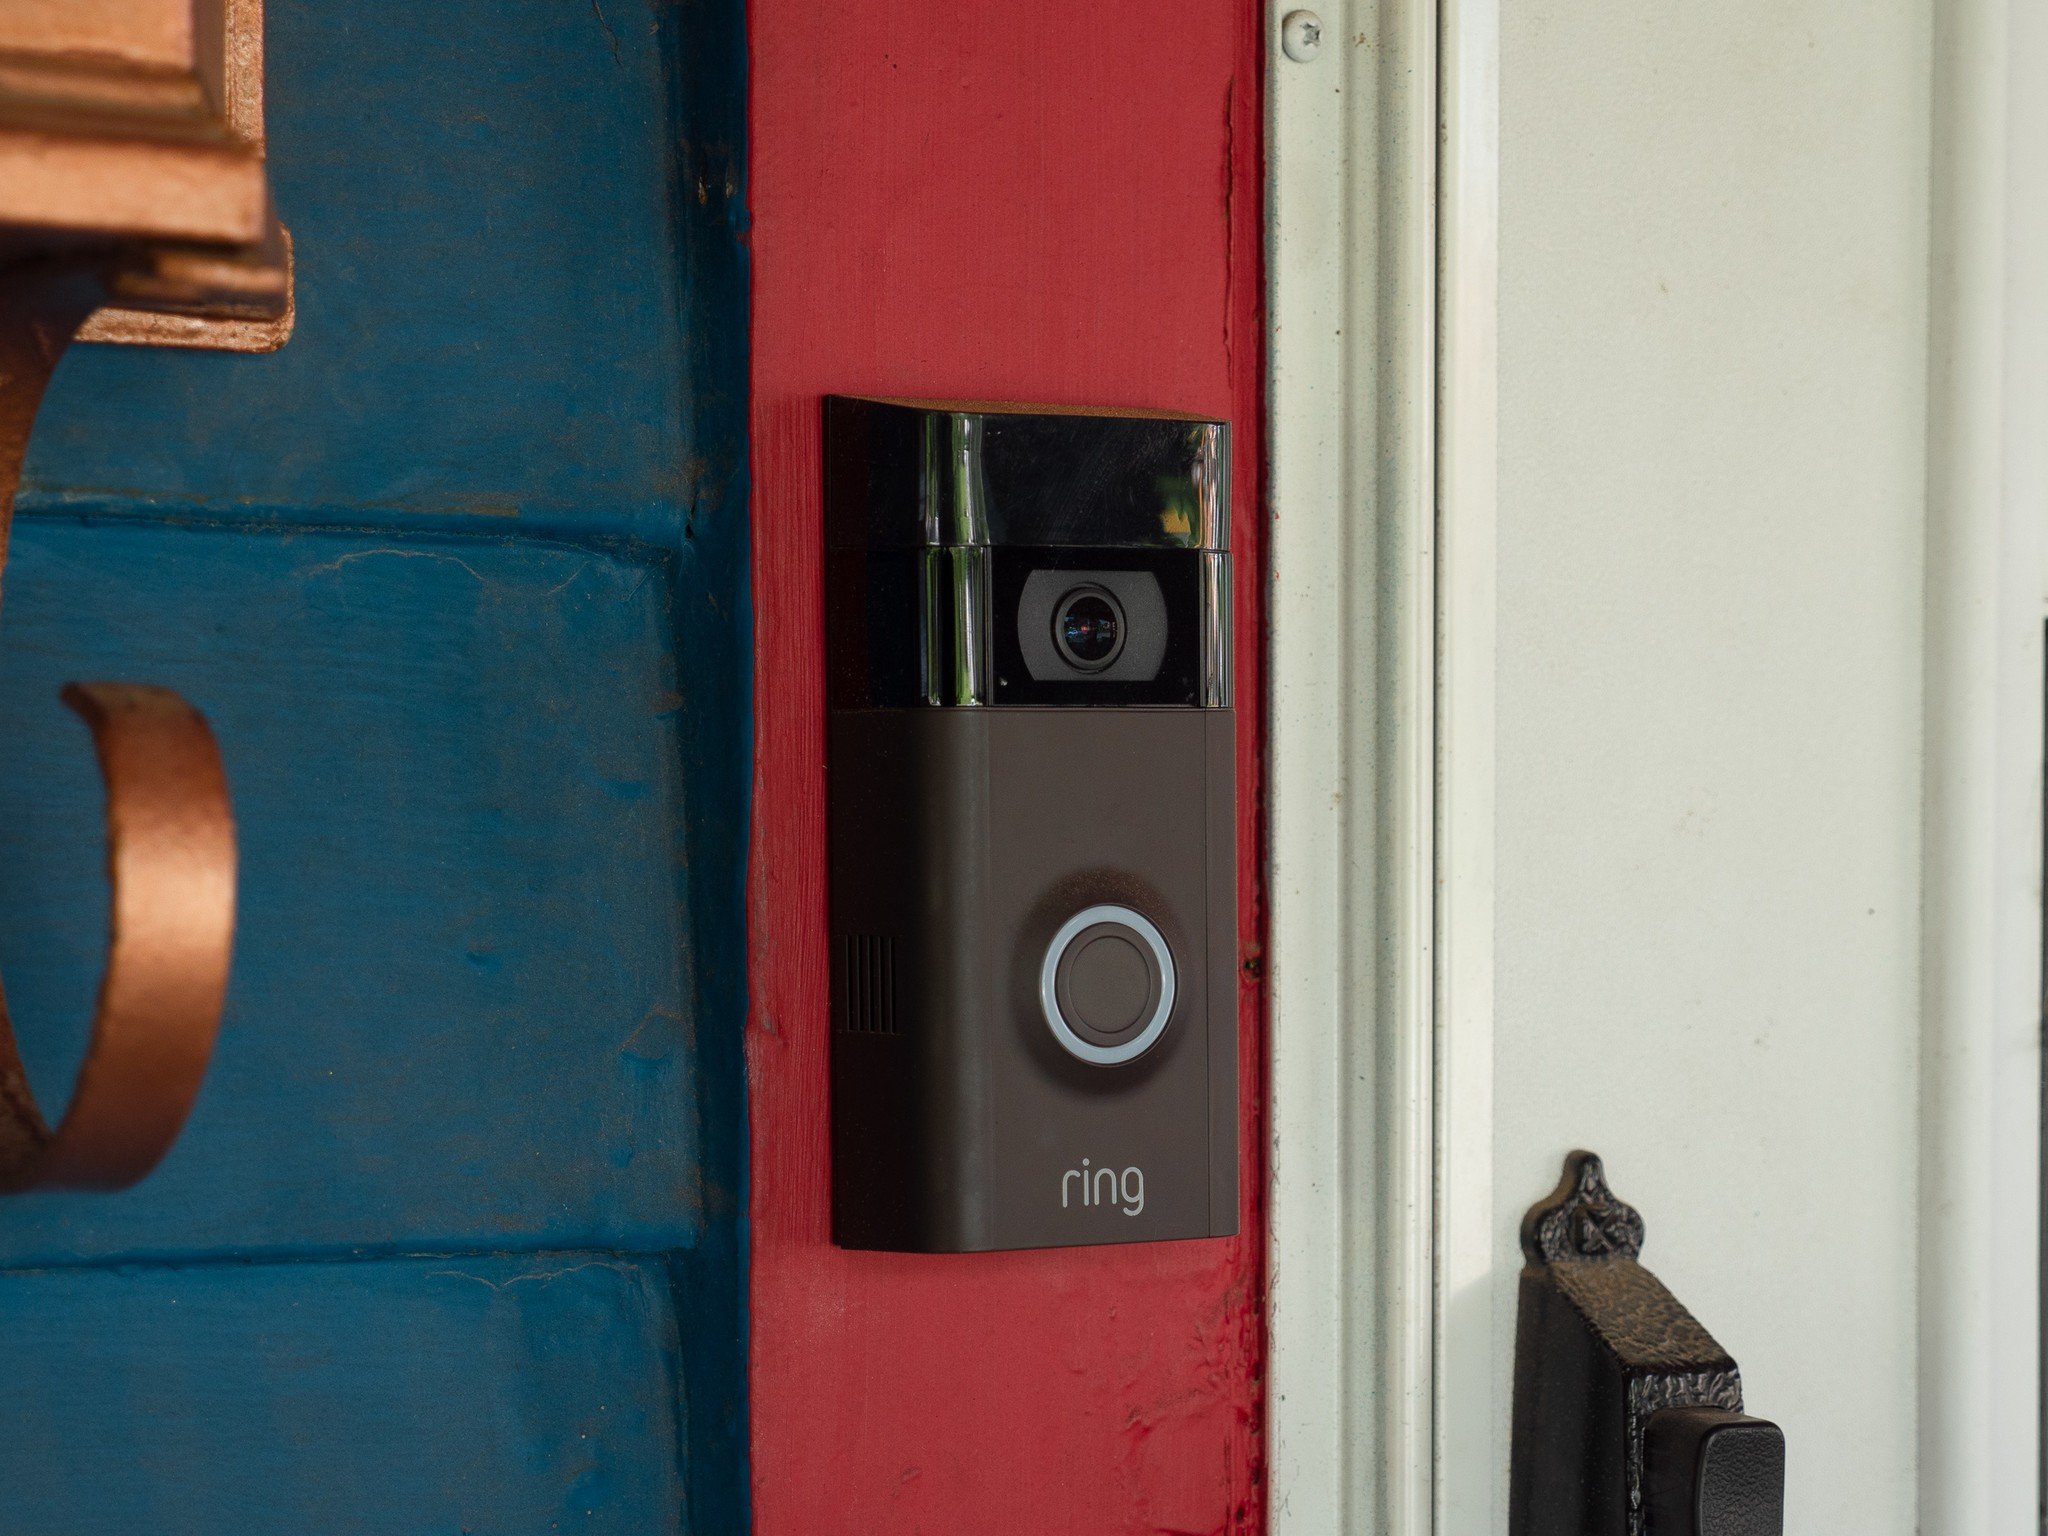 Can Burglars disable Ring Doorbell?